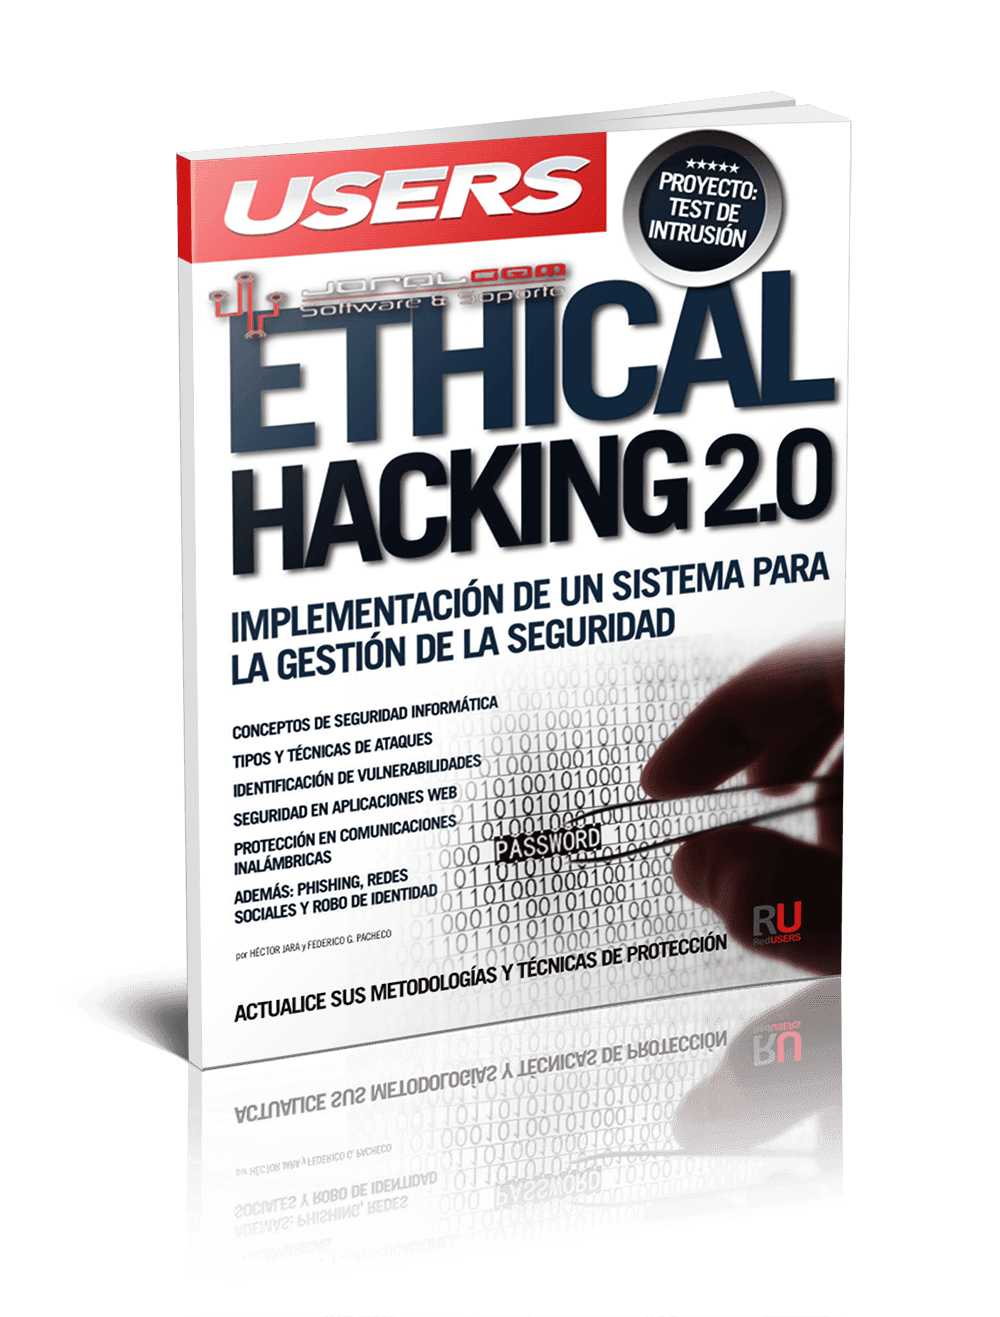 Ethical Hacking 2.0 - Implementación de un Sistema para la Gestión de la Seguridad [USERS] [PDF]